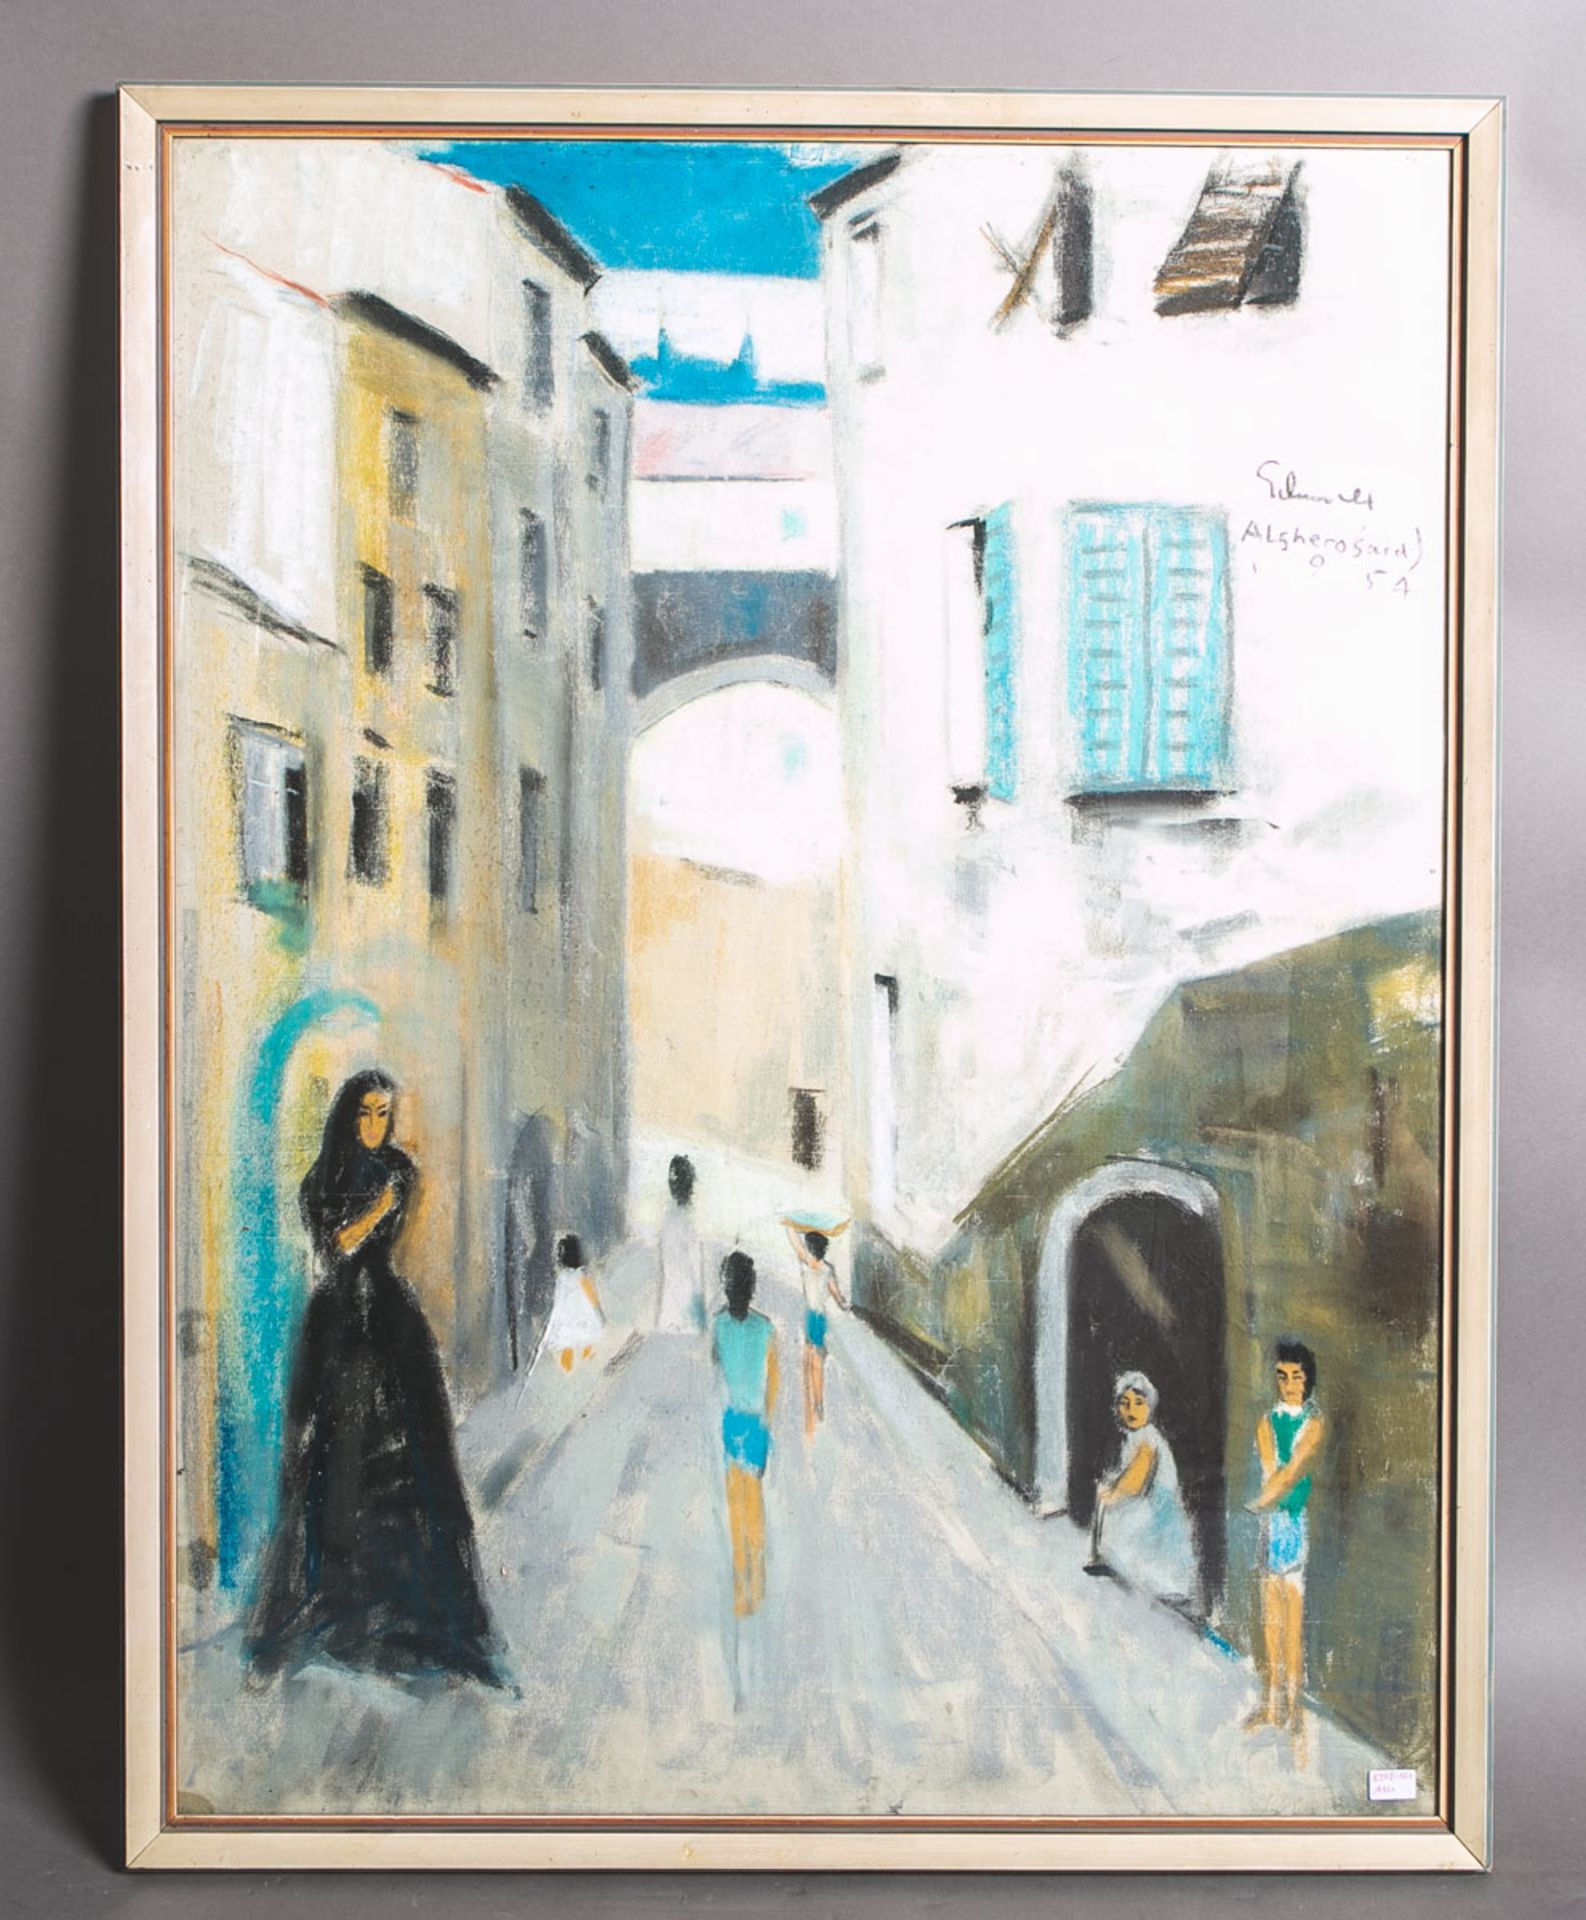 Künstler/in unbekannt (20. Jh.), "Altstadt von Alghero, Sardinien" (1954)